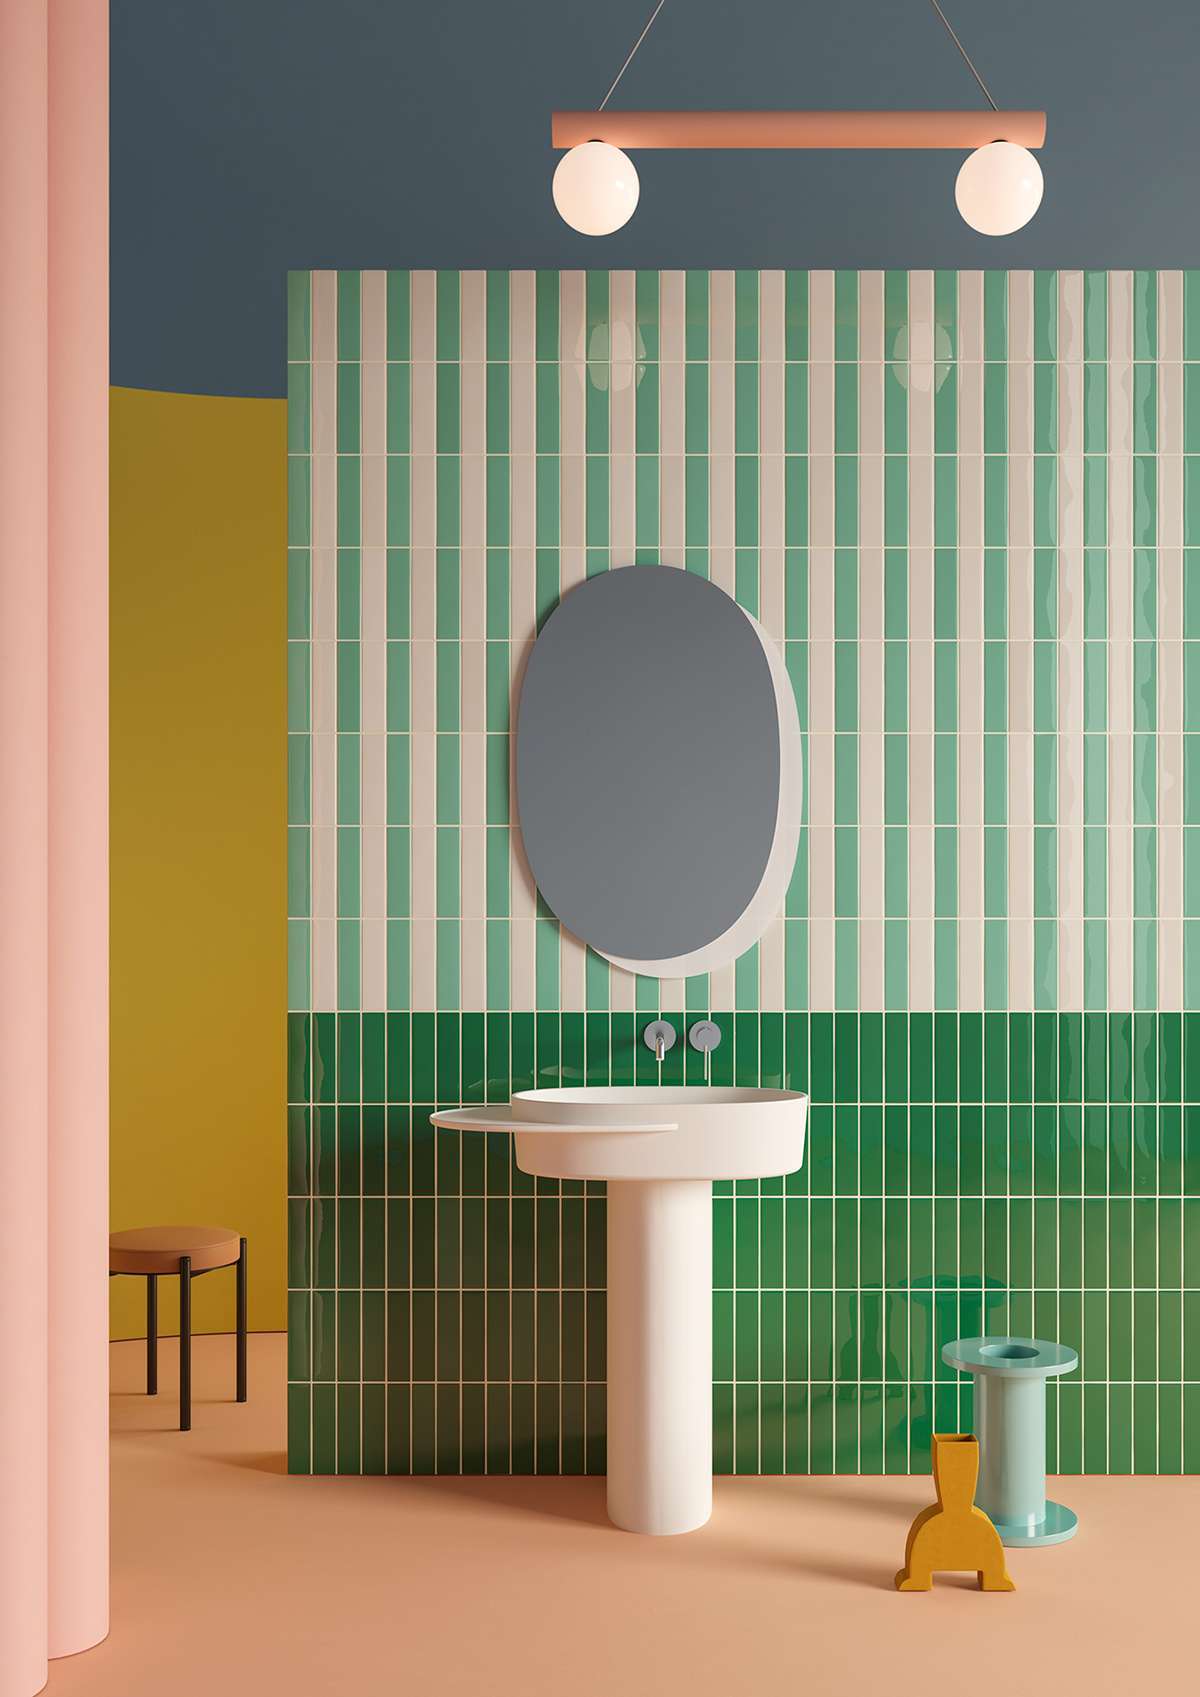 Mẫu thiết kế nhà vệ sinh theo phong cách Color Block phối màu độc đáo